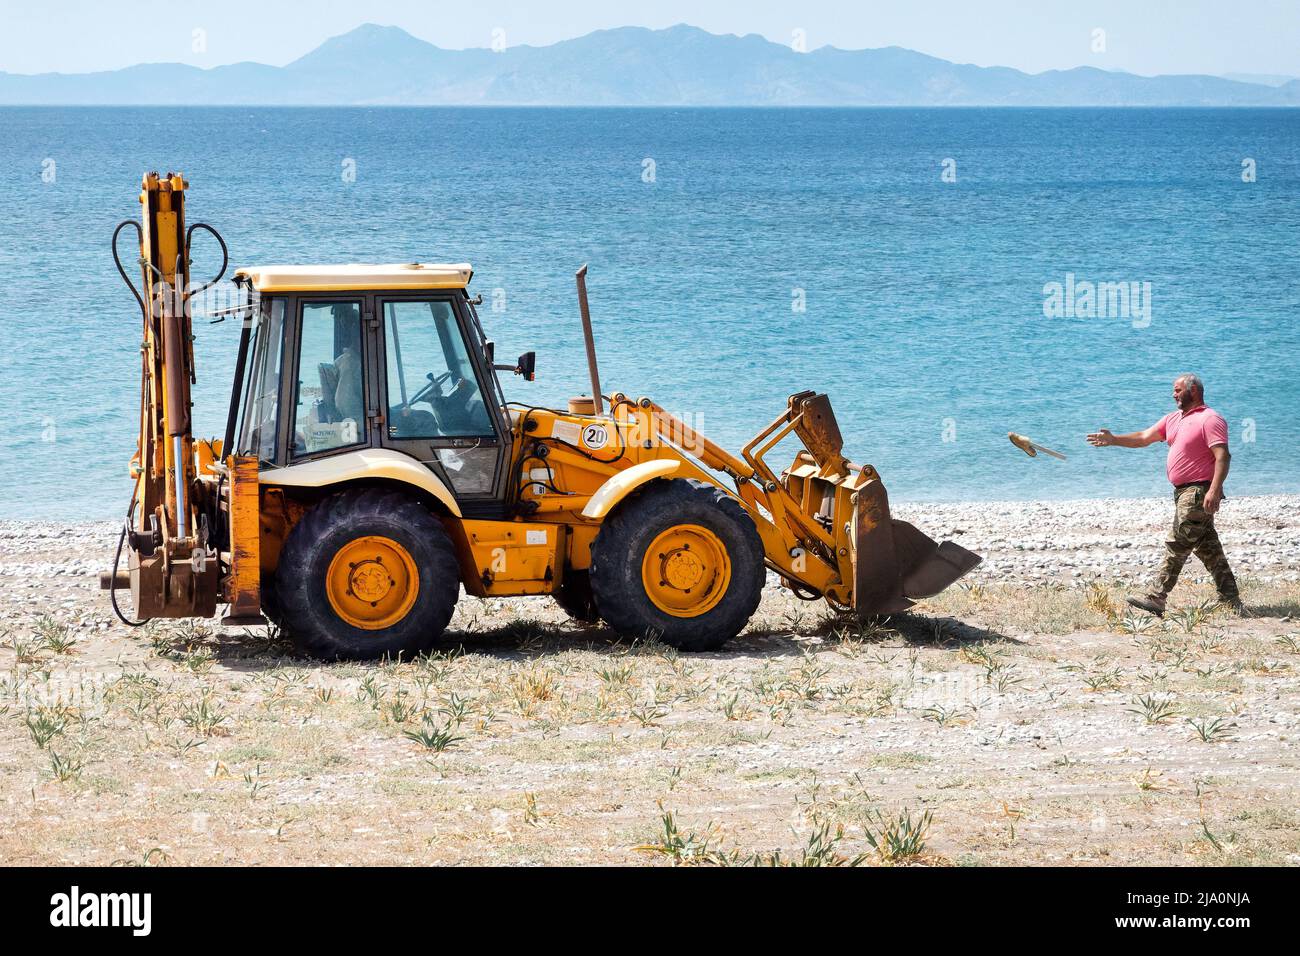 Un trabajador tira basura en un zero de JCB mientras limpia y limpia basura desechada en una playa cerca de la ciudad de Rodas, Grecia. Foto de stock